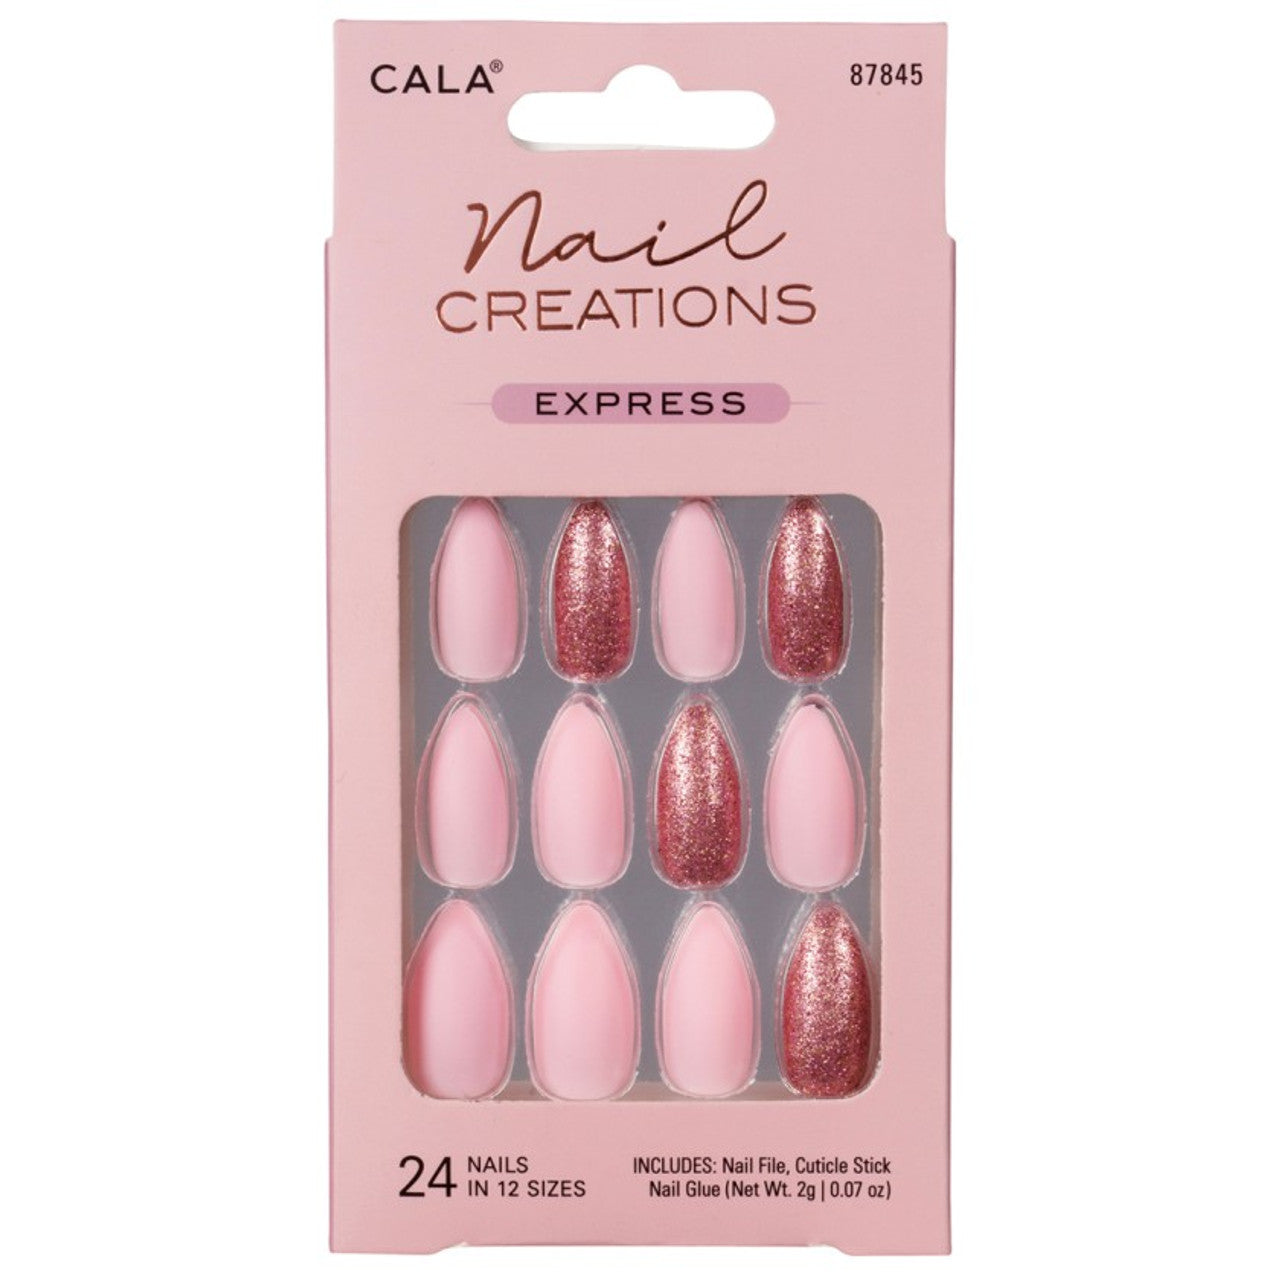 Cala Press-on Nail Kits